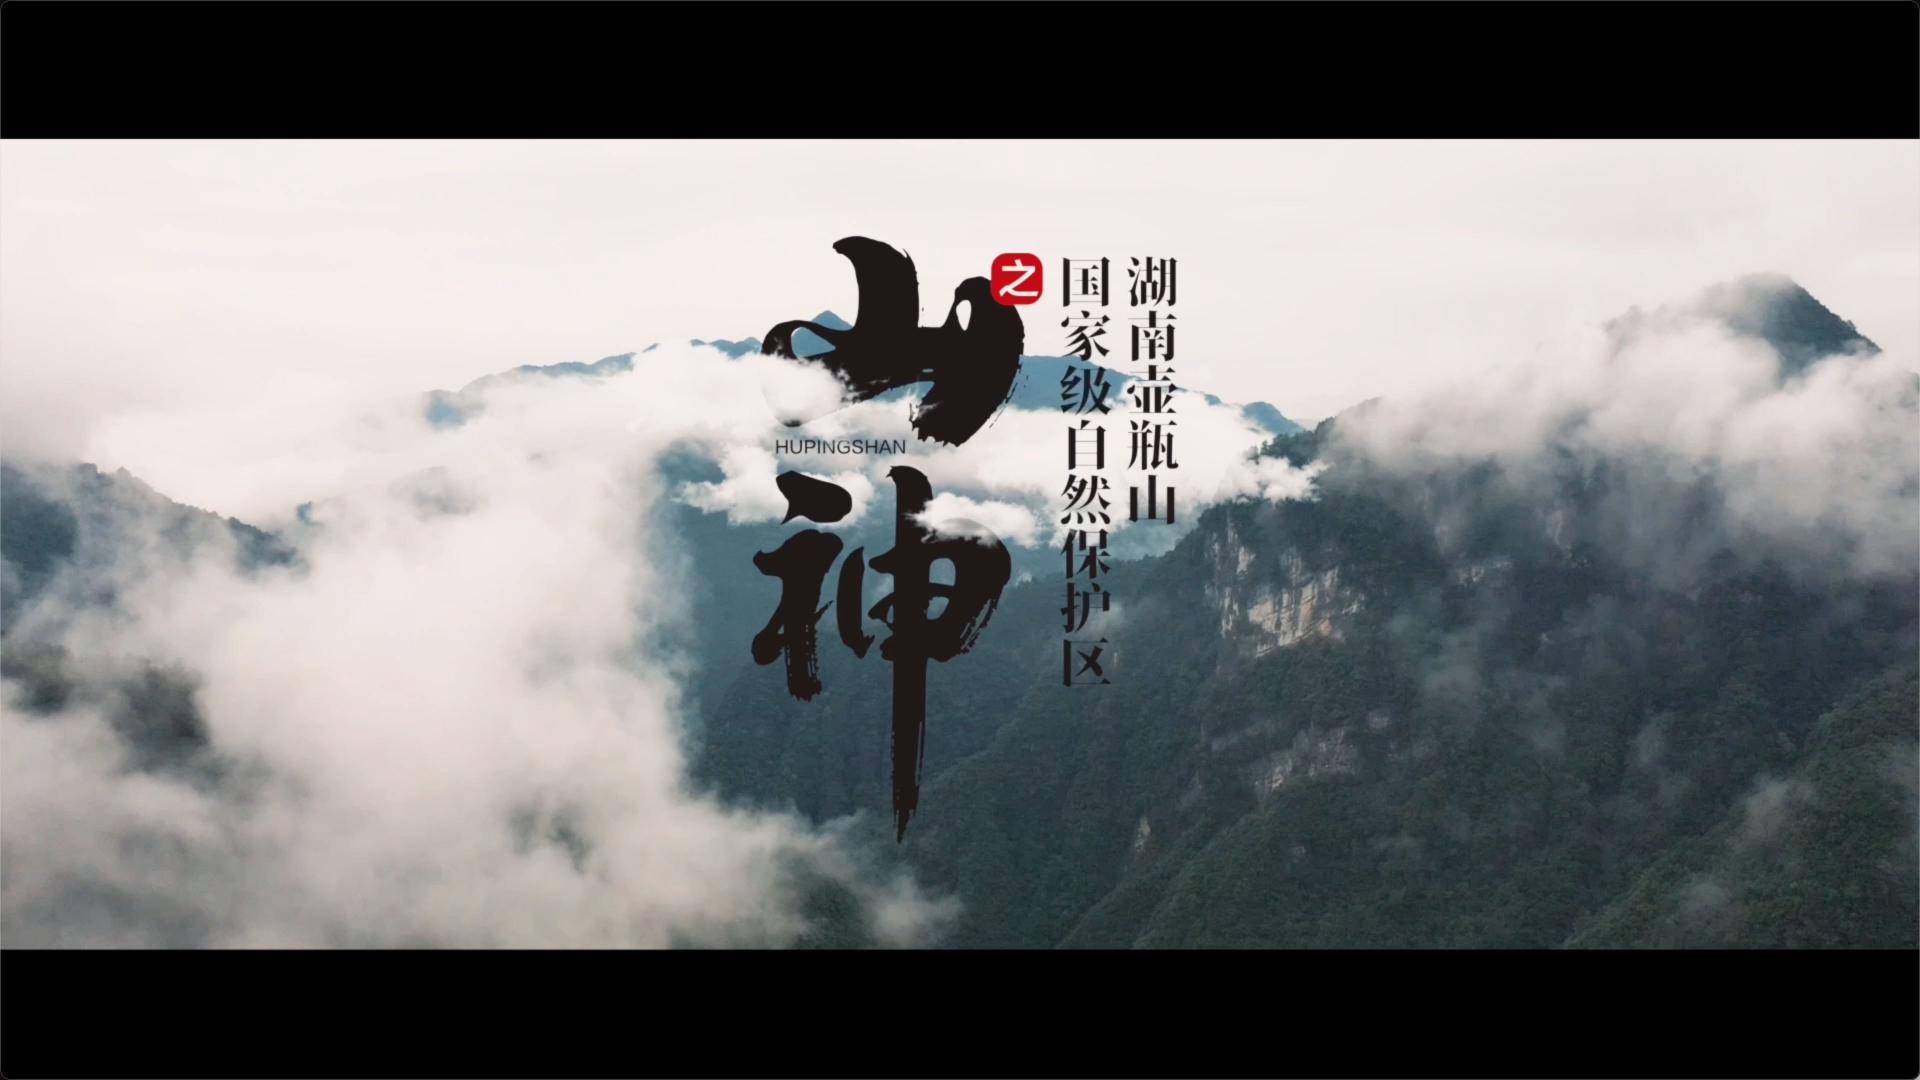 湖南壶瓶山国家级自然保护区成立40周年献礼片|《山神》护林员篇